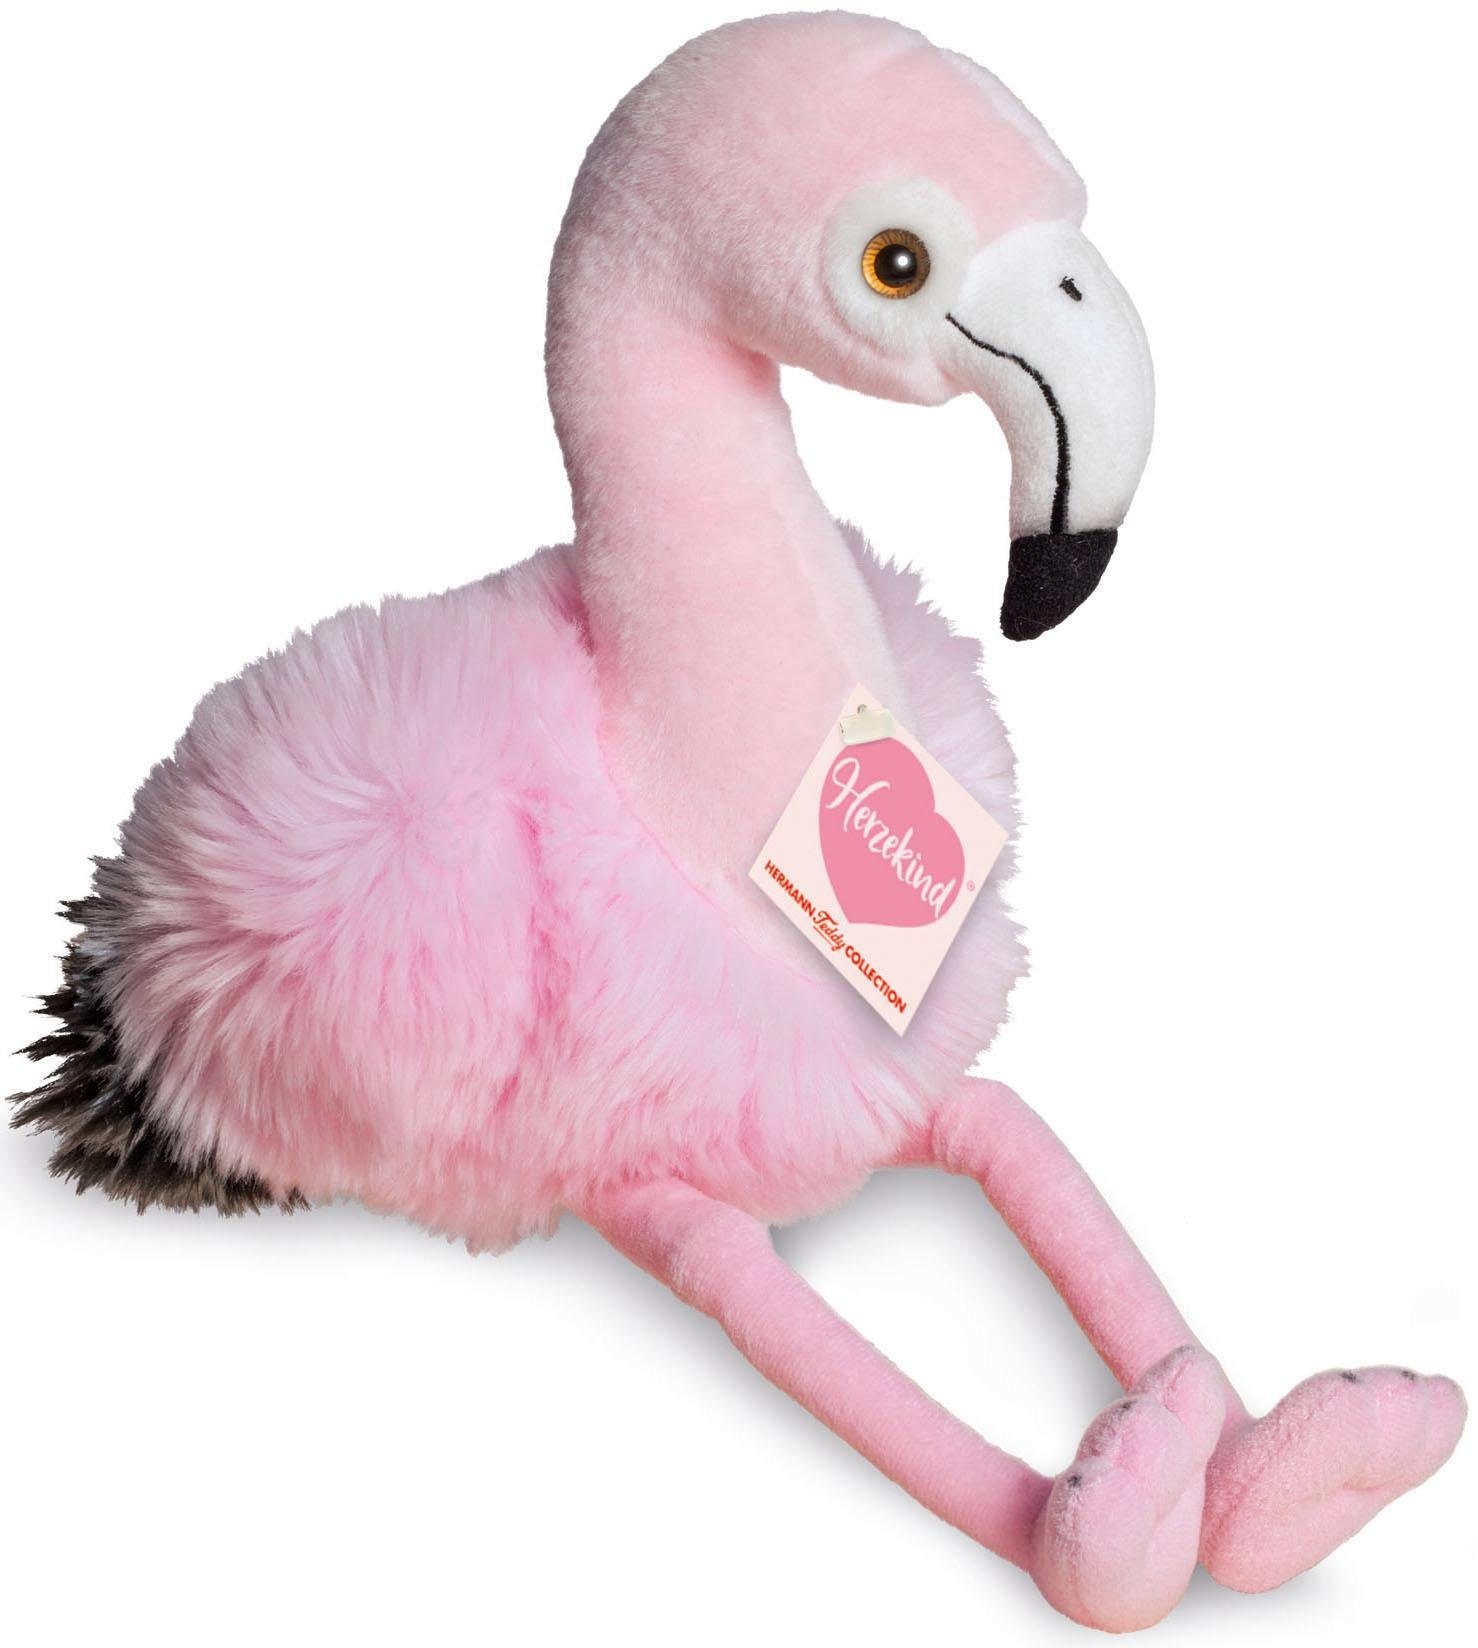 17-100 cm sitzend ca NEU!!! Flamingo Stofftier  von Sunkid mit Etikett 